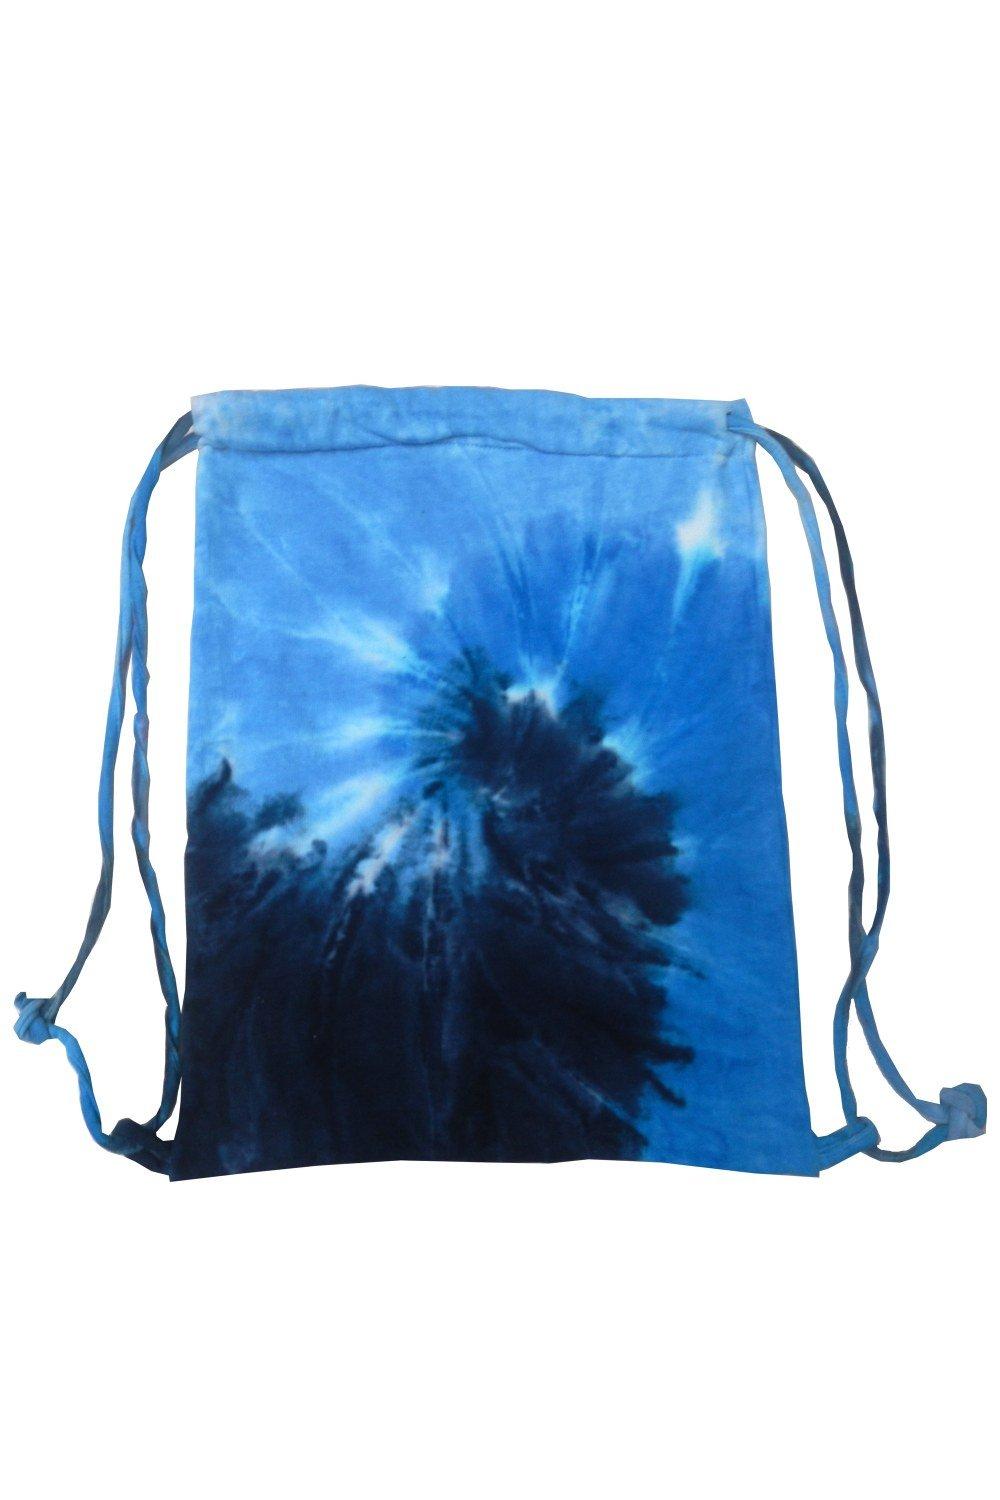 Спортивная большая сумка на шнуровке Tie Dye Colortone, синий оригинальный легкий жесткий спиннер 20 дюймов черная ручная сумка